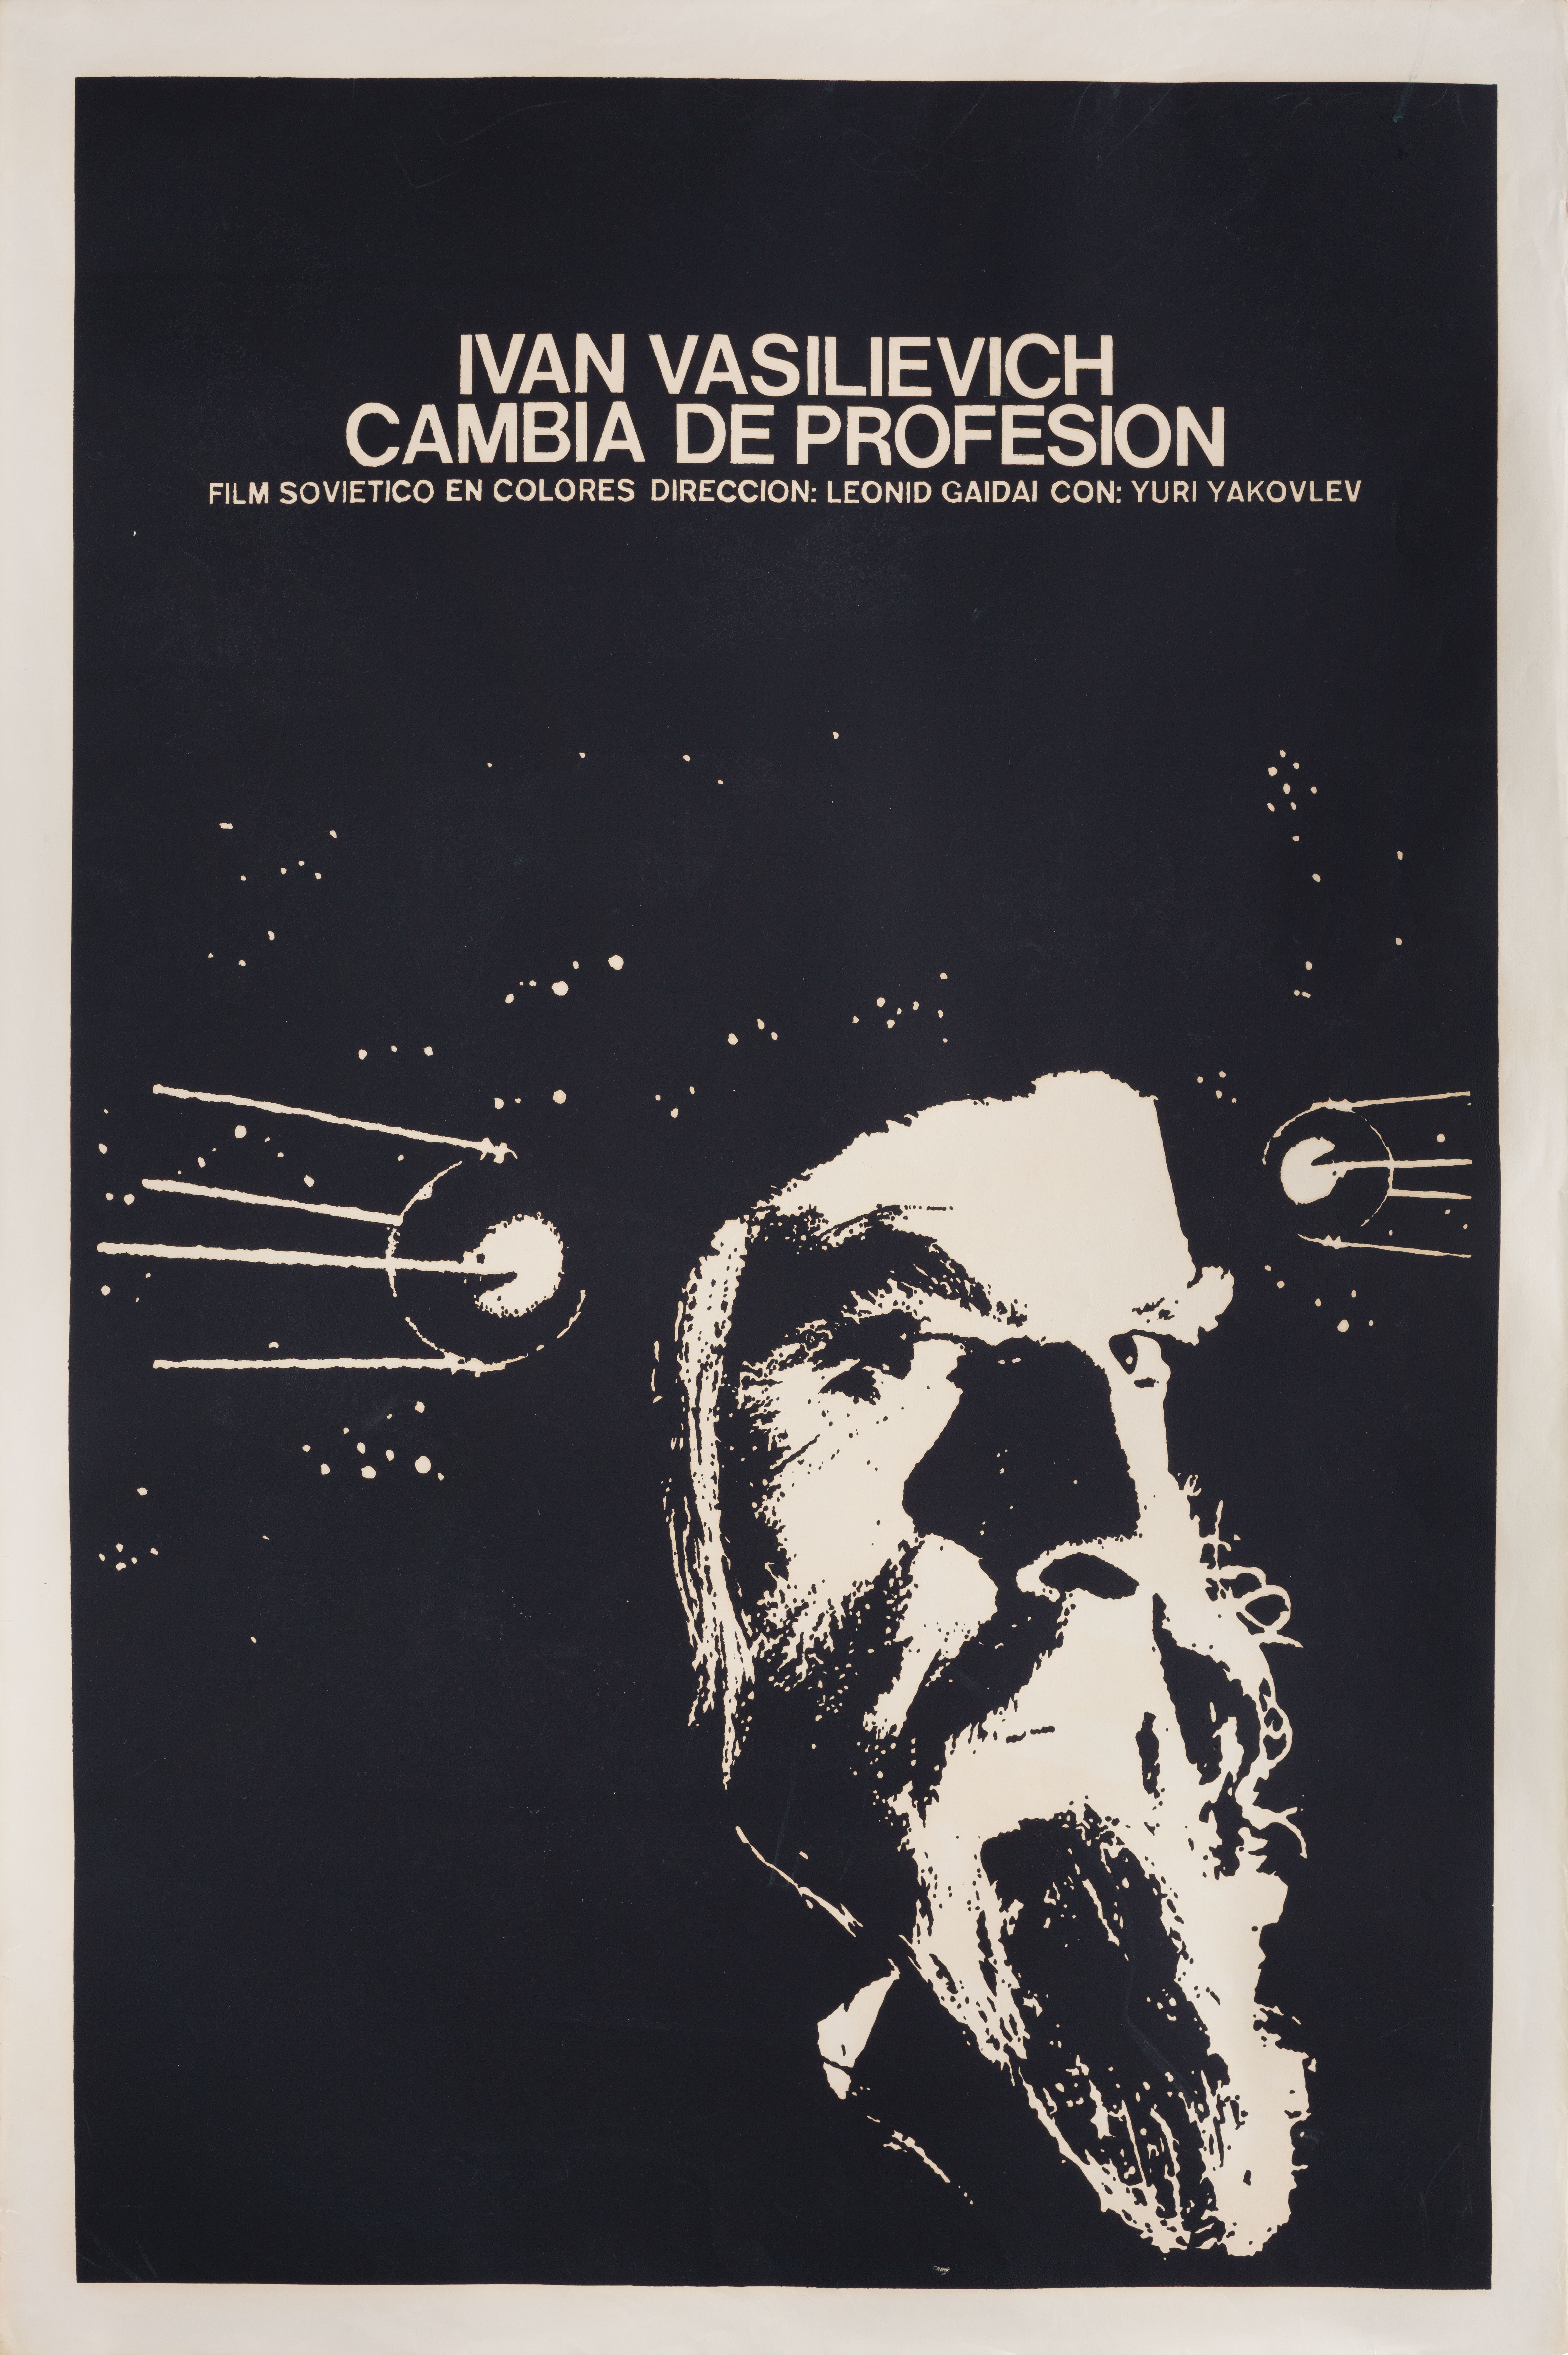 Иван Васильевич меняет профессию (Ivan Vasilyevich Changes His Profession, 1973), режиссёр Леонид Гайдай, кубинский плакат к фильму, 1973 год